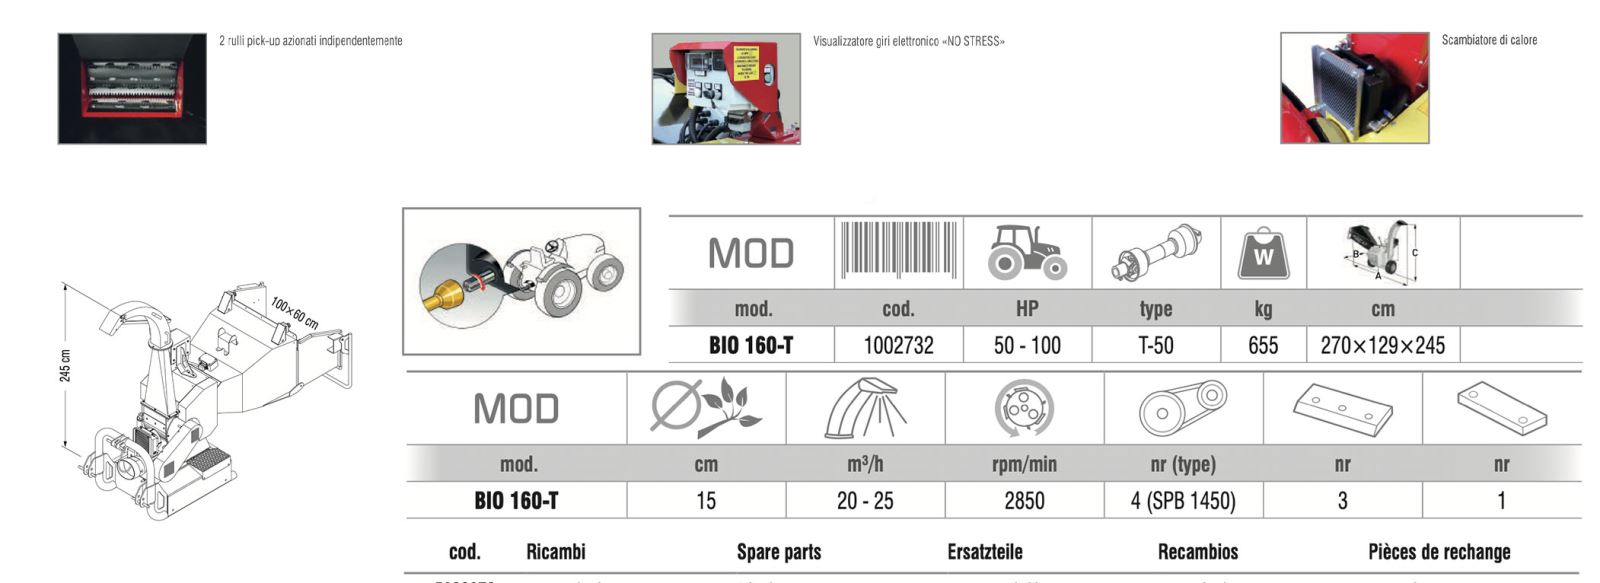 caratteristiche biotrituratore per trattori, zanon bio160t